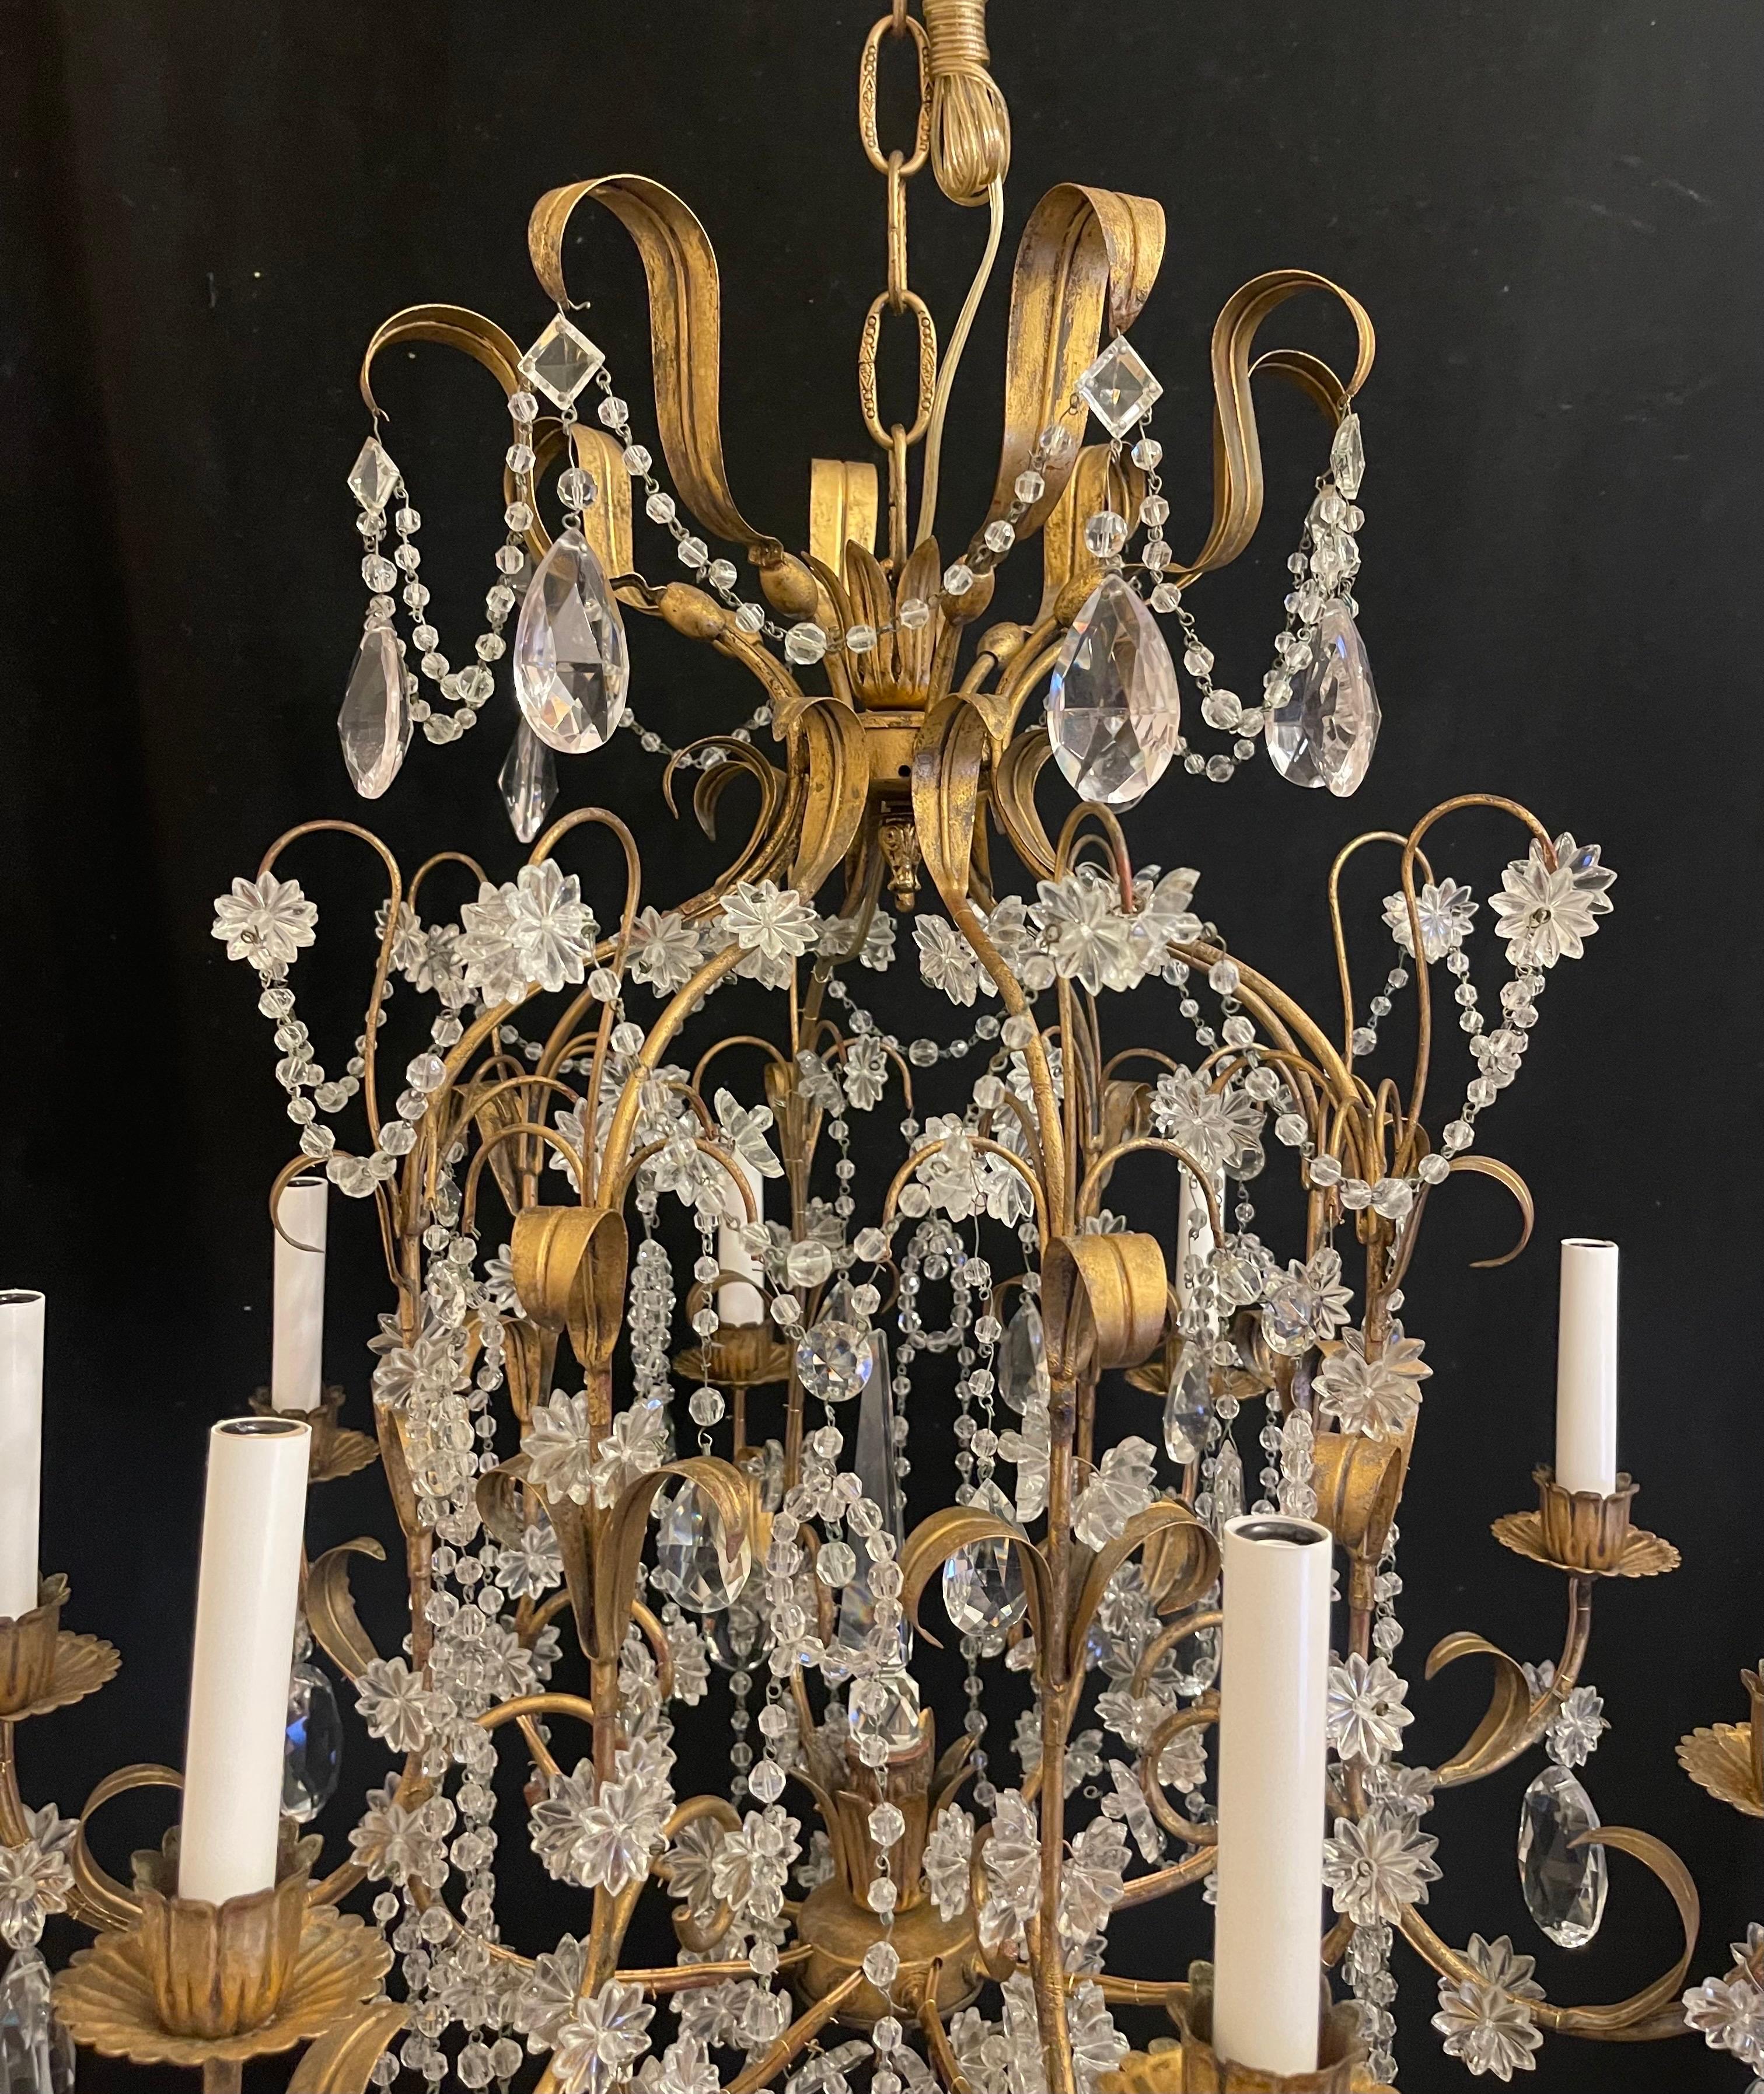 Merveilleuse cage à oiseaux fantaisiste de style Maison Baguès du milieu du siècle, dorée, avec une guirlande de perles et des gouttes de cristal ornées d'une étoile. Ce grand lustre à 8 chandeliers a été entièrement recâblé et est accompagné d'une